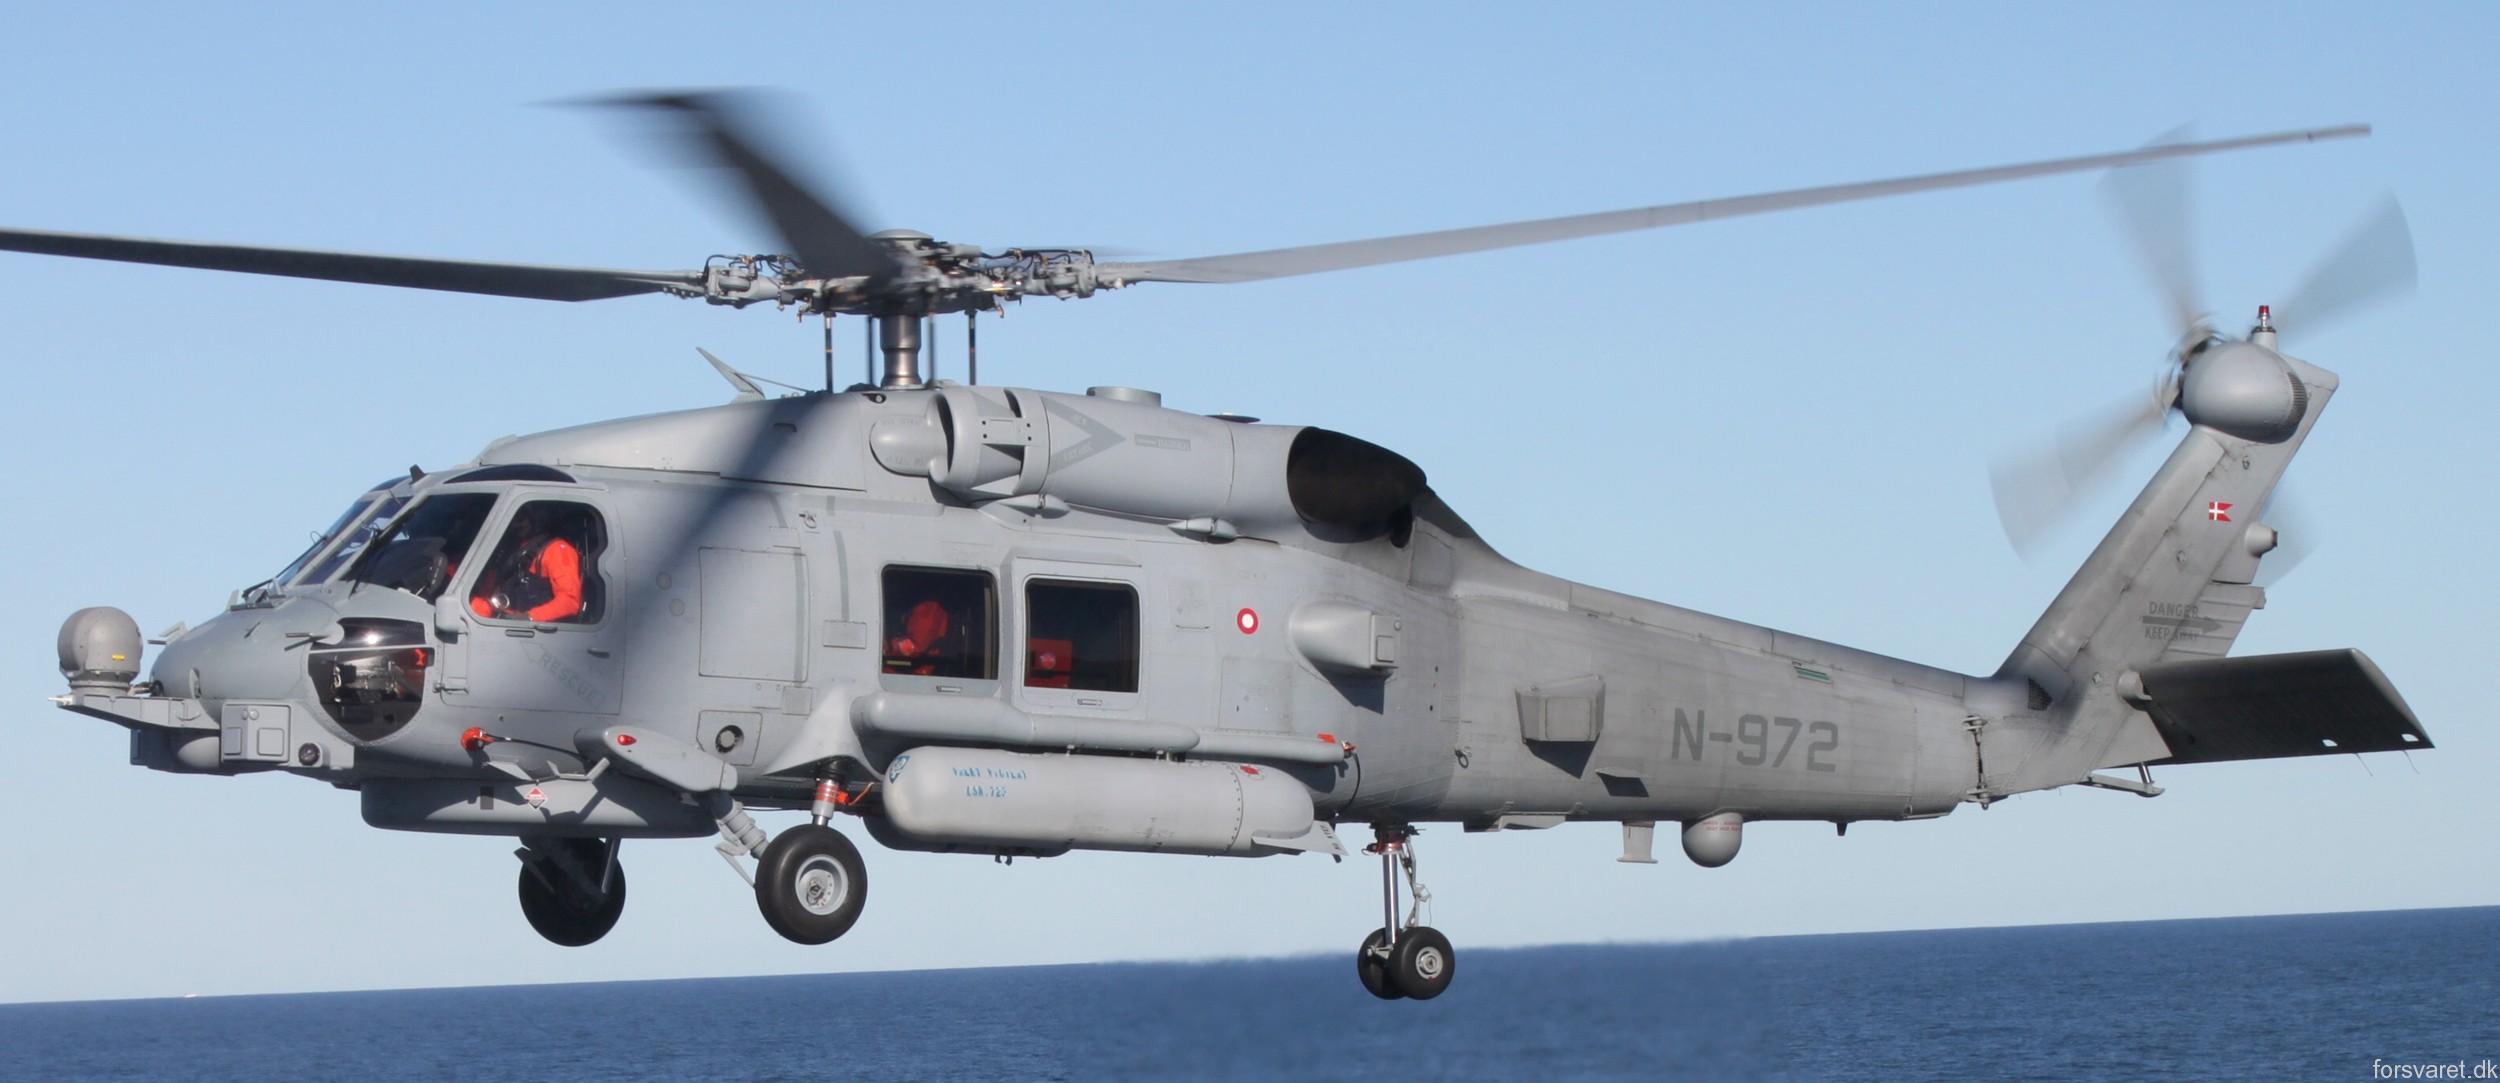 mh-60r seahawk royal danish navy air force flyvevåbnet kongelige danske marine sikorsky helicopter 723 eskadrille squadron karup 32